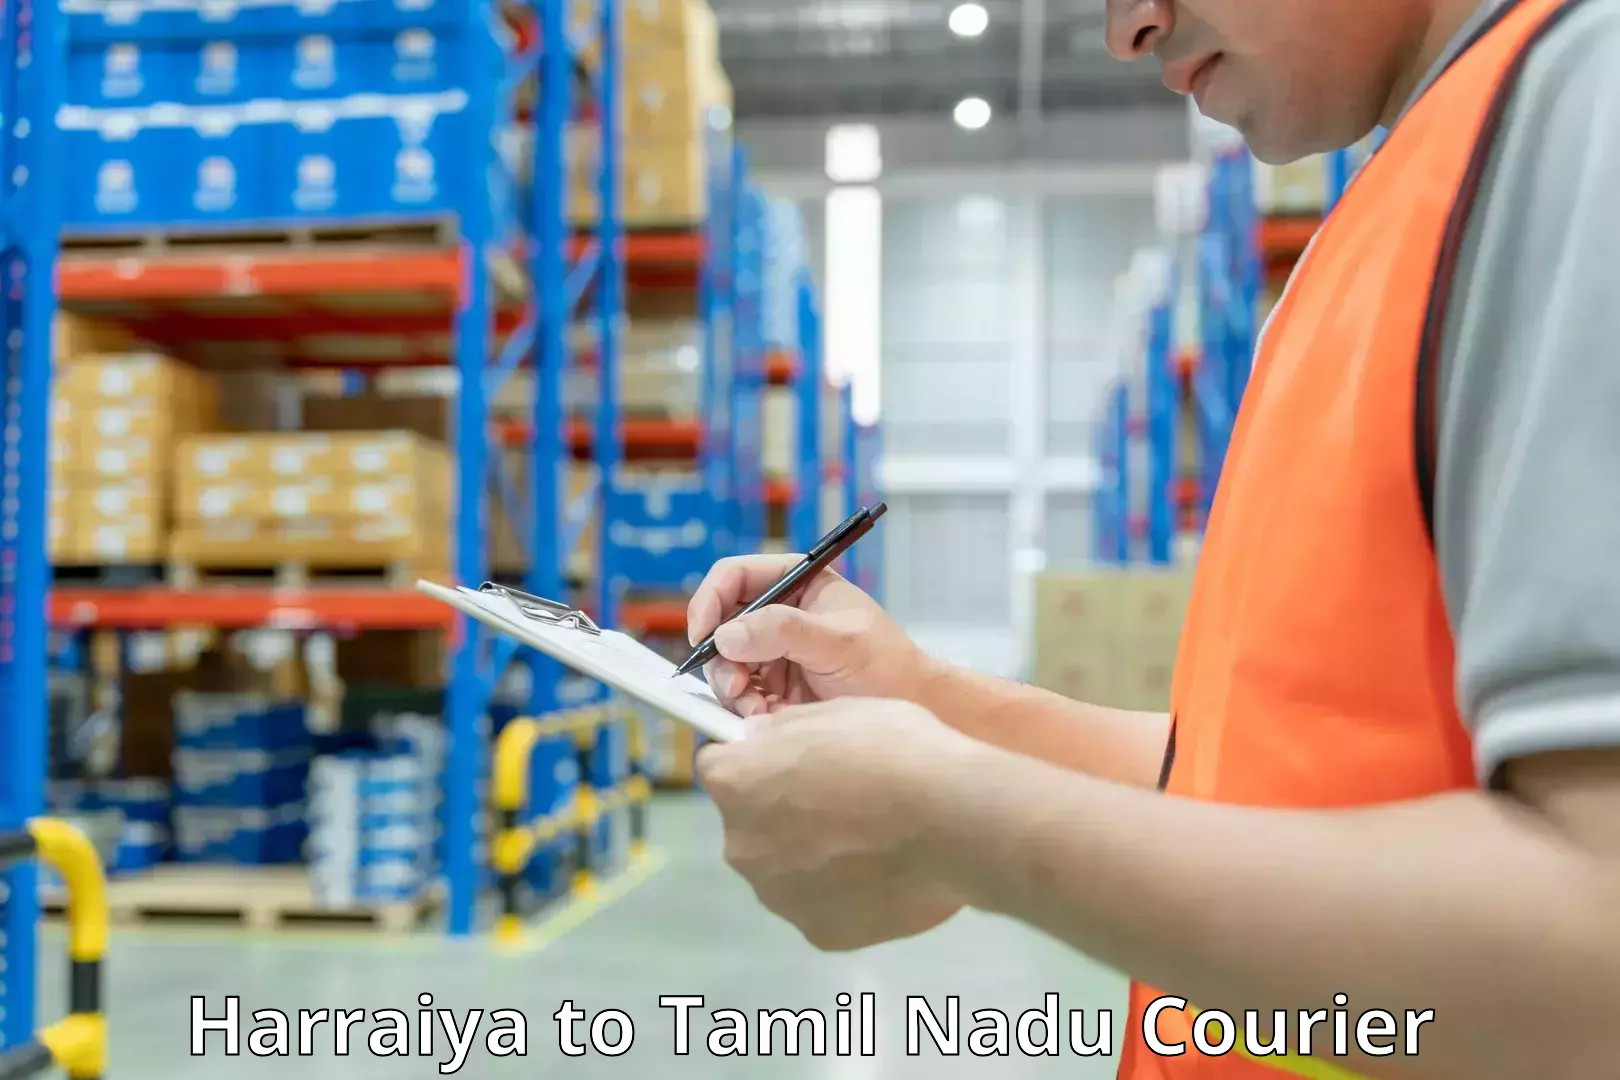 Baggage delivery planning Harraiya to Tamil Nadu